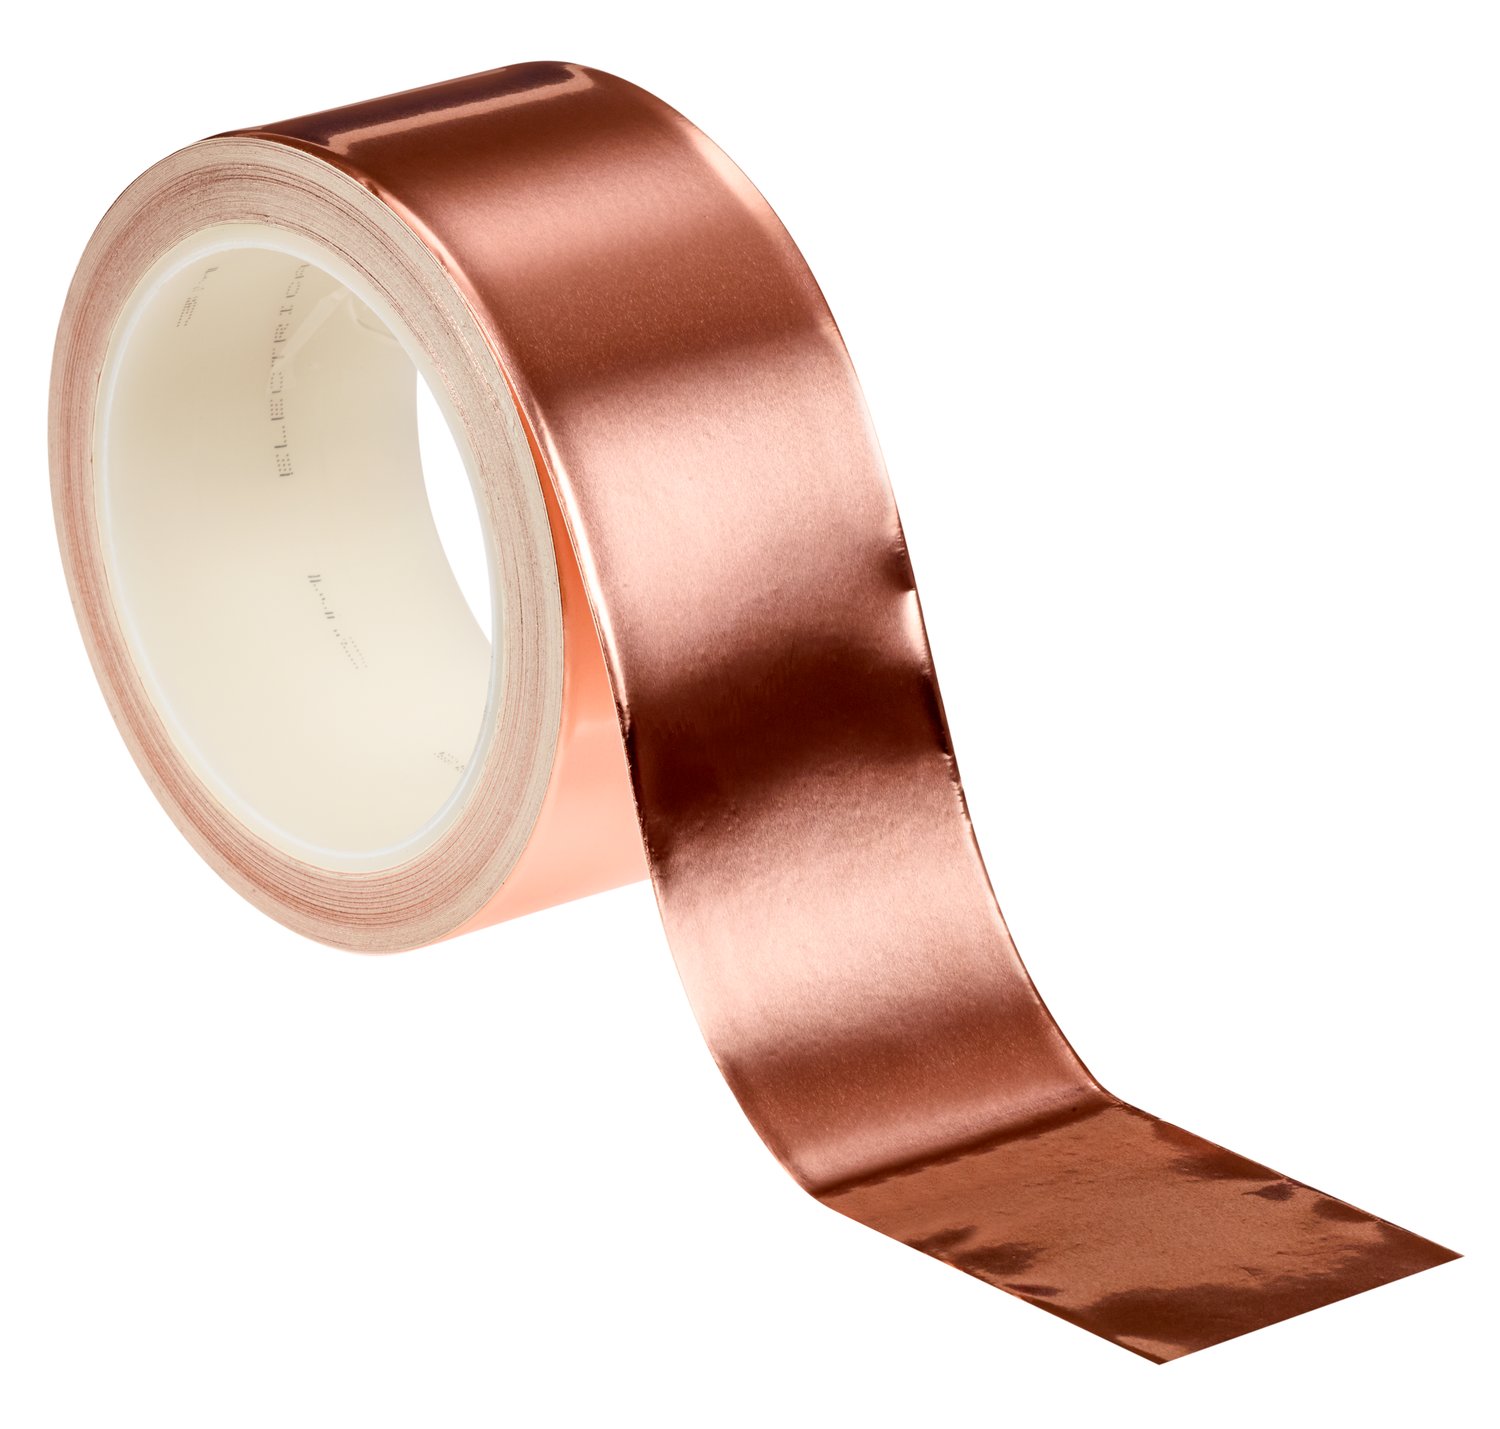 7000132170 - 3M EMI Copper Foil Shielding Tape 1181, 2 in x 18 yd (50,80 mm x 16.5
m), 5 per case